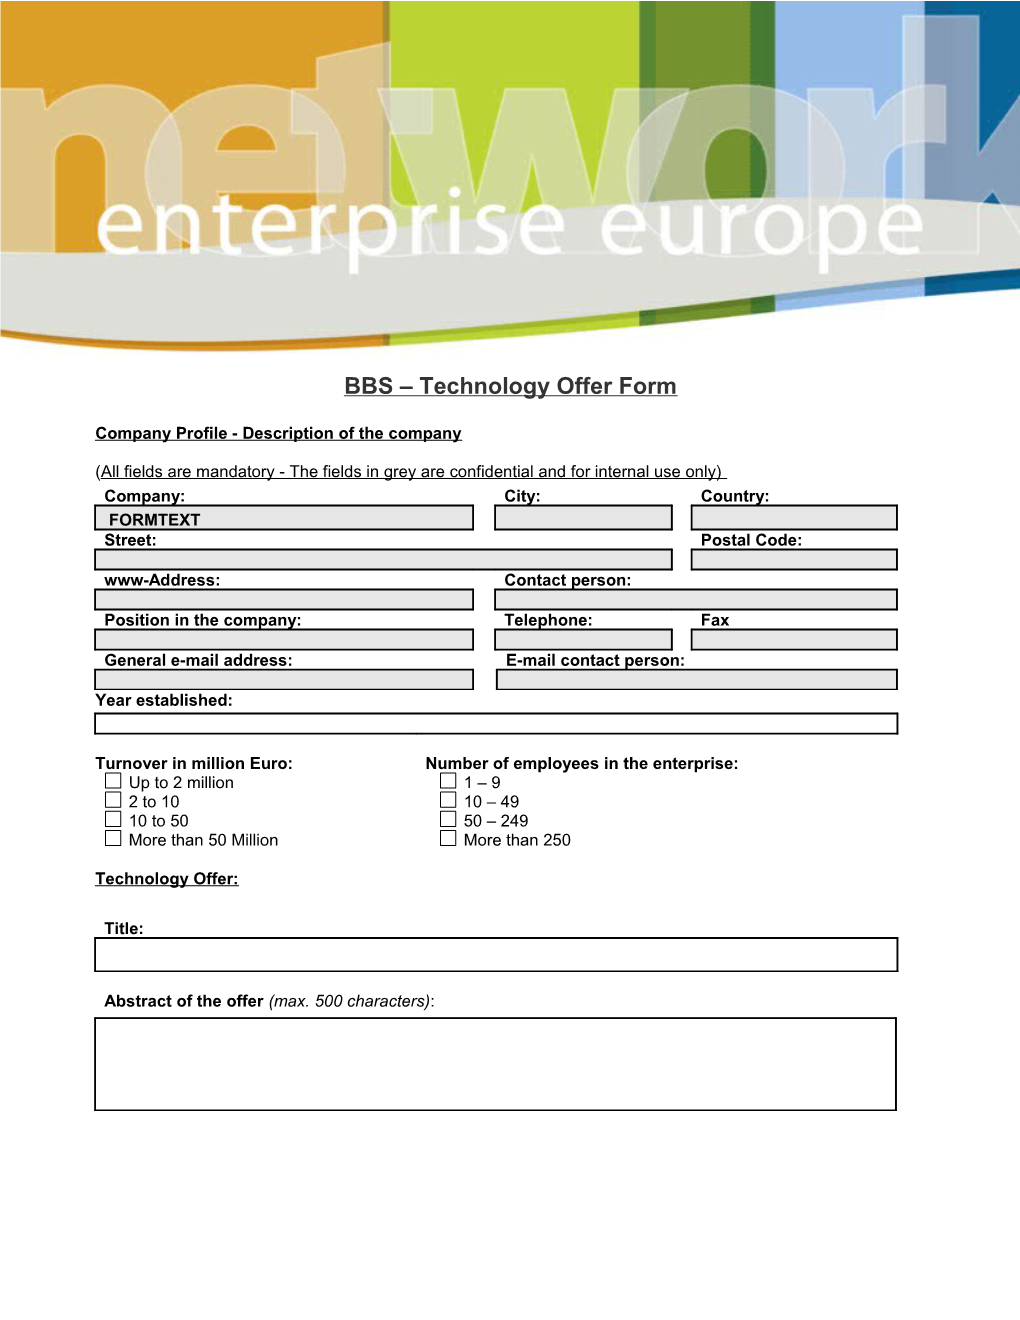 BBS Technology Offer Form